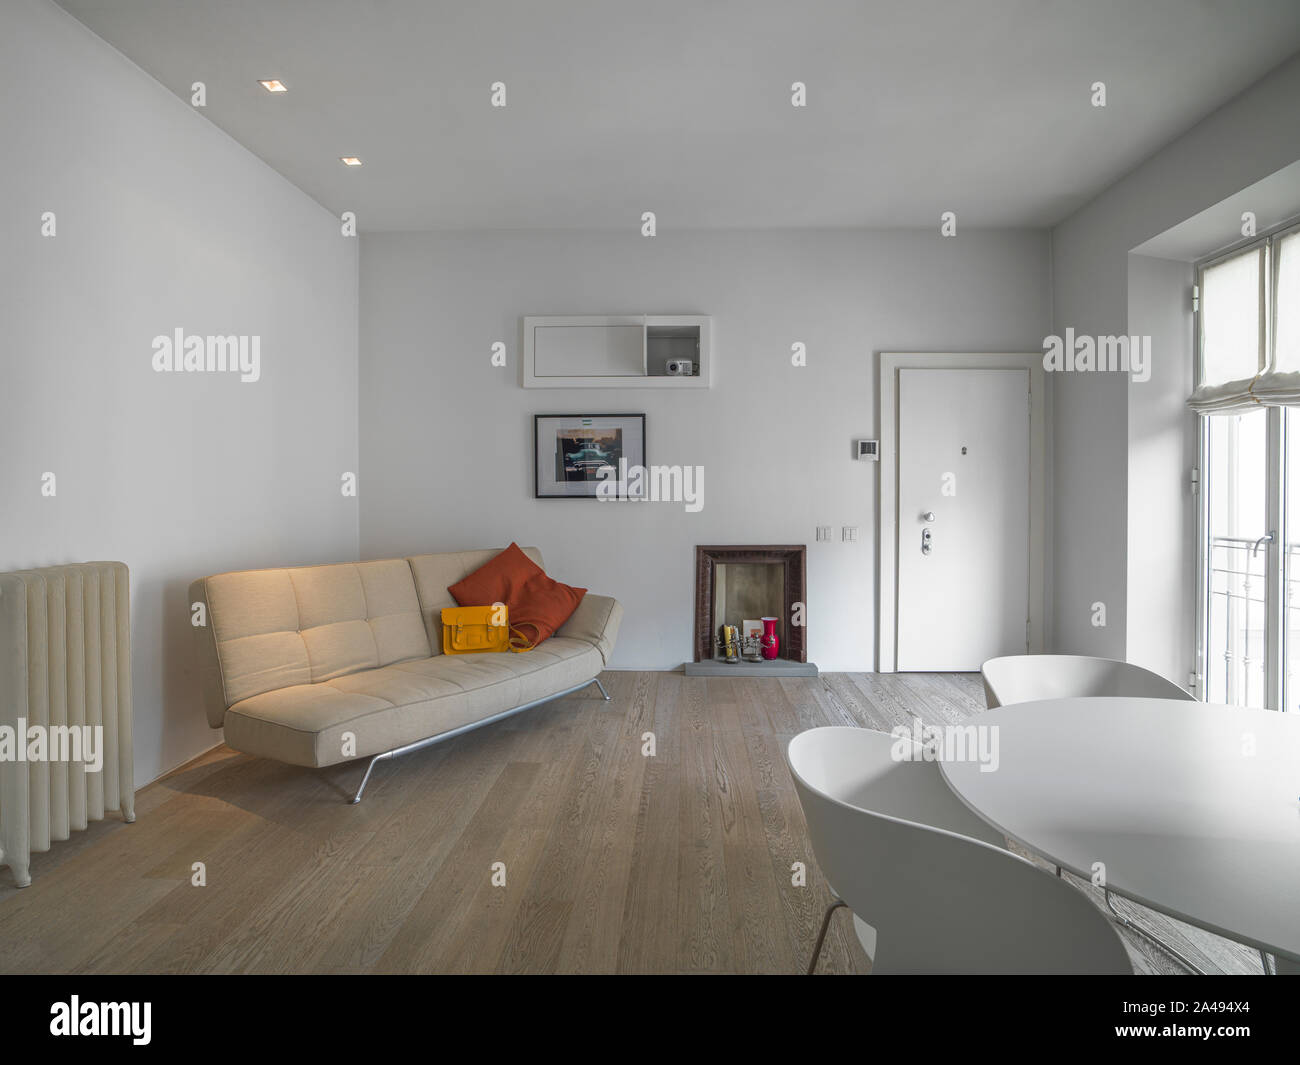 Vista interior de una moderna sala de estar, en primer plano el blanco mesa de comedor con siempre de color blanco, y en fondo la tela beige Fotografía de stock -